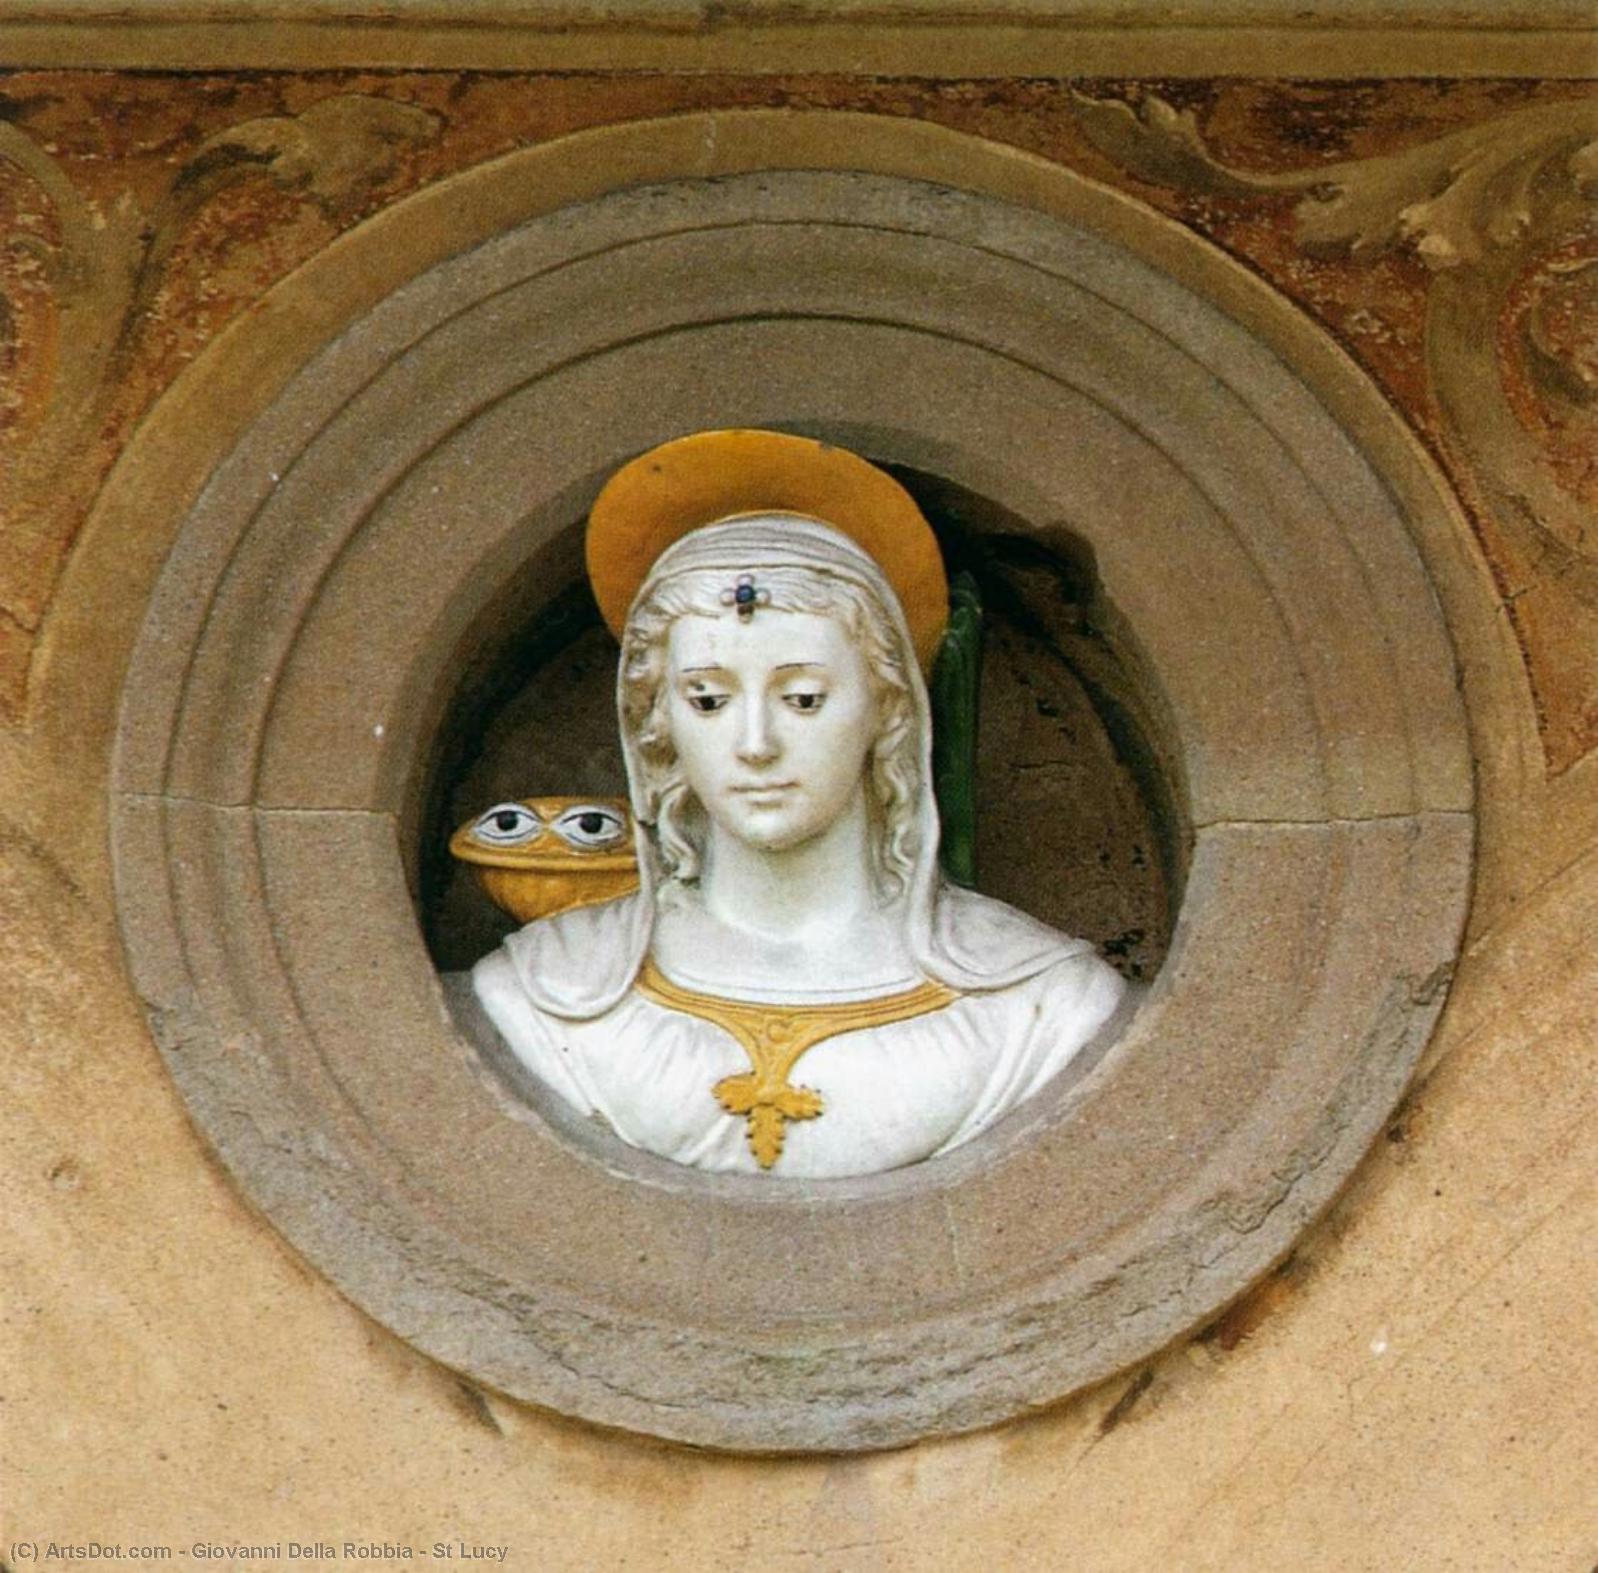 WikiOO.org - אנציקלופדיה לאמנויות יפות - ציור, יצירות אמנות Giovanni Della Robbia - St Lucy